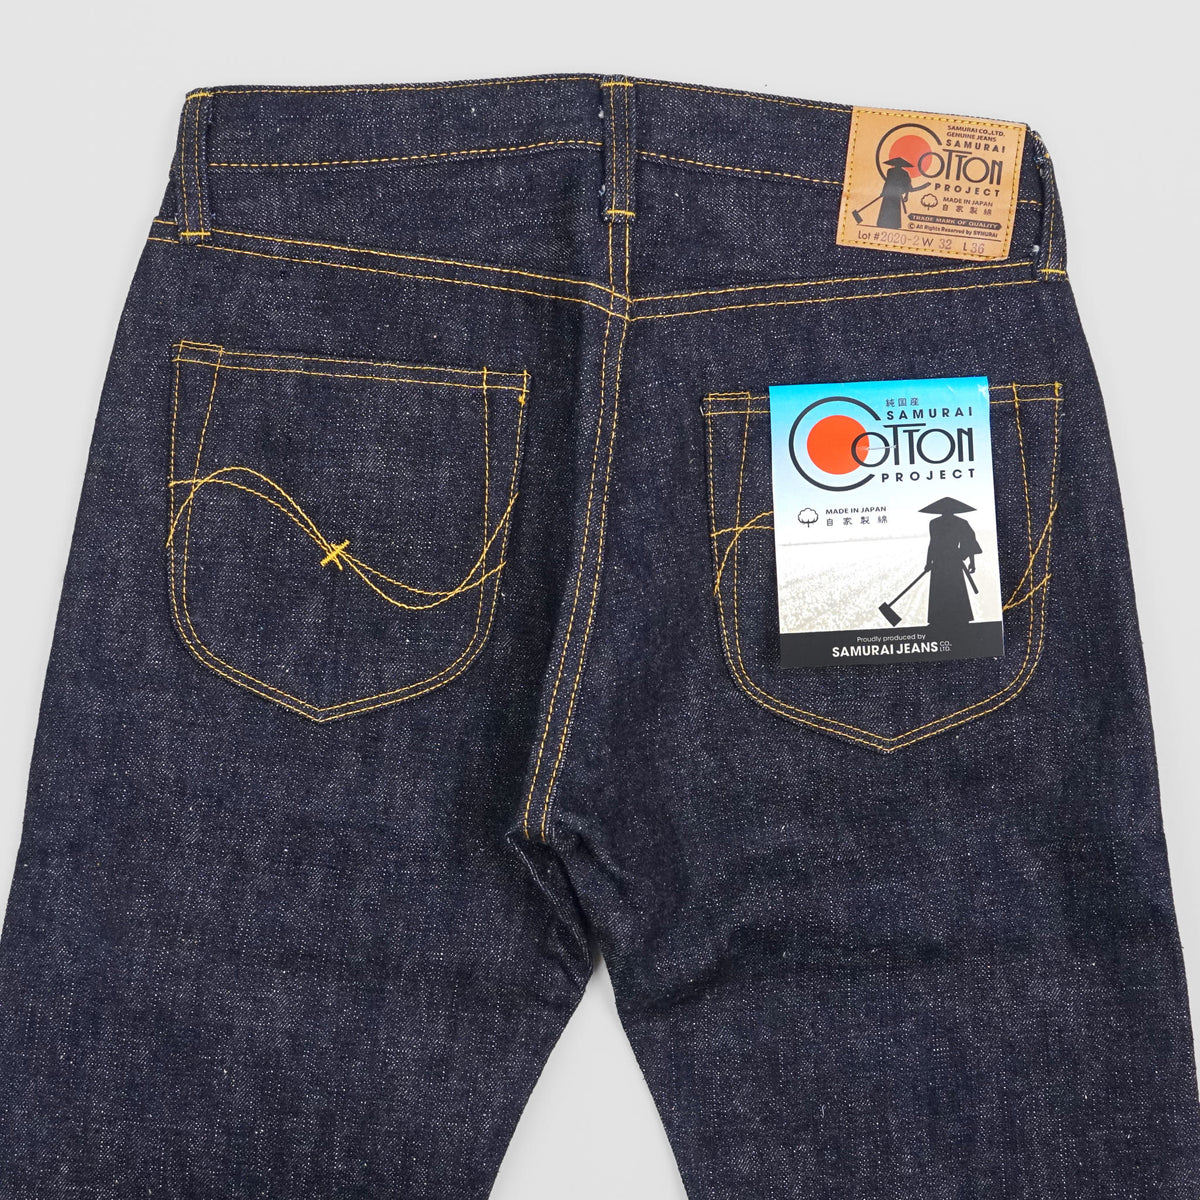 Samurai Jeans 17oz Japanese Cotton Project